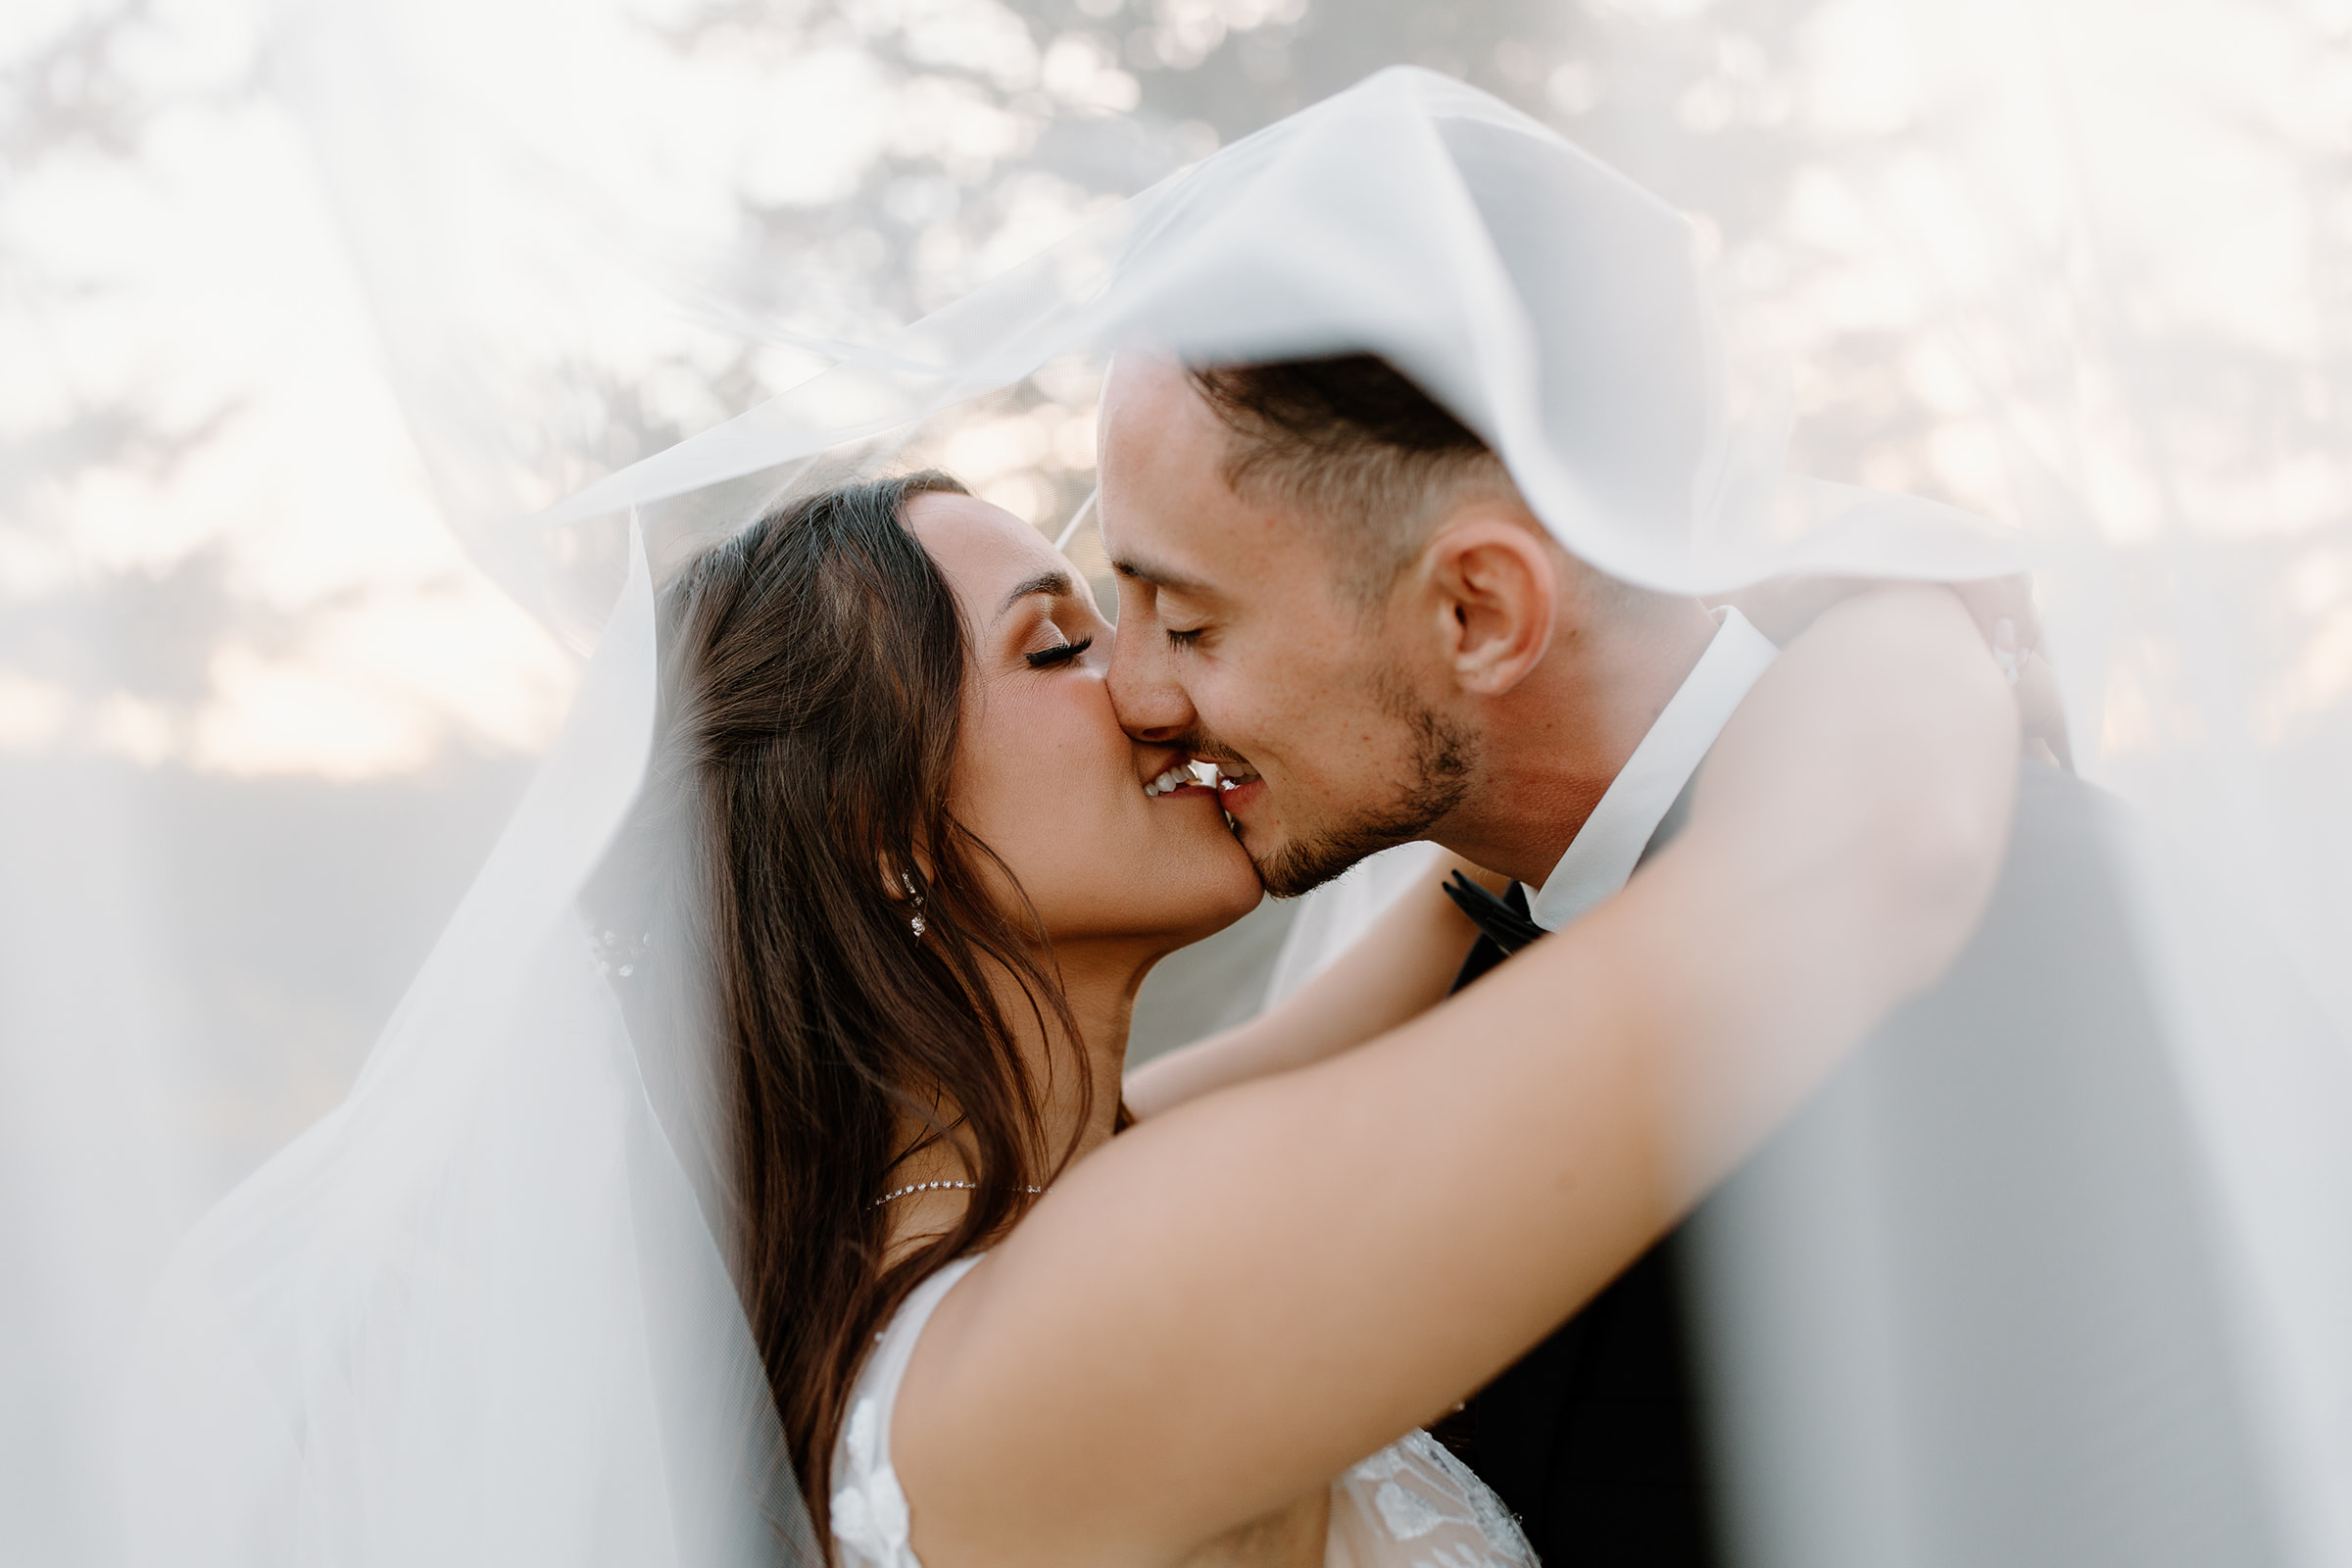 Bride and groom share a kiss underneath a veil